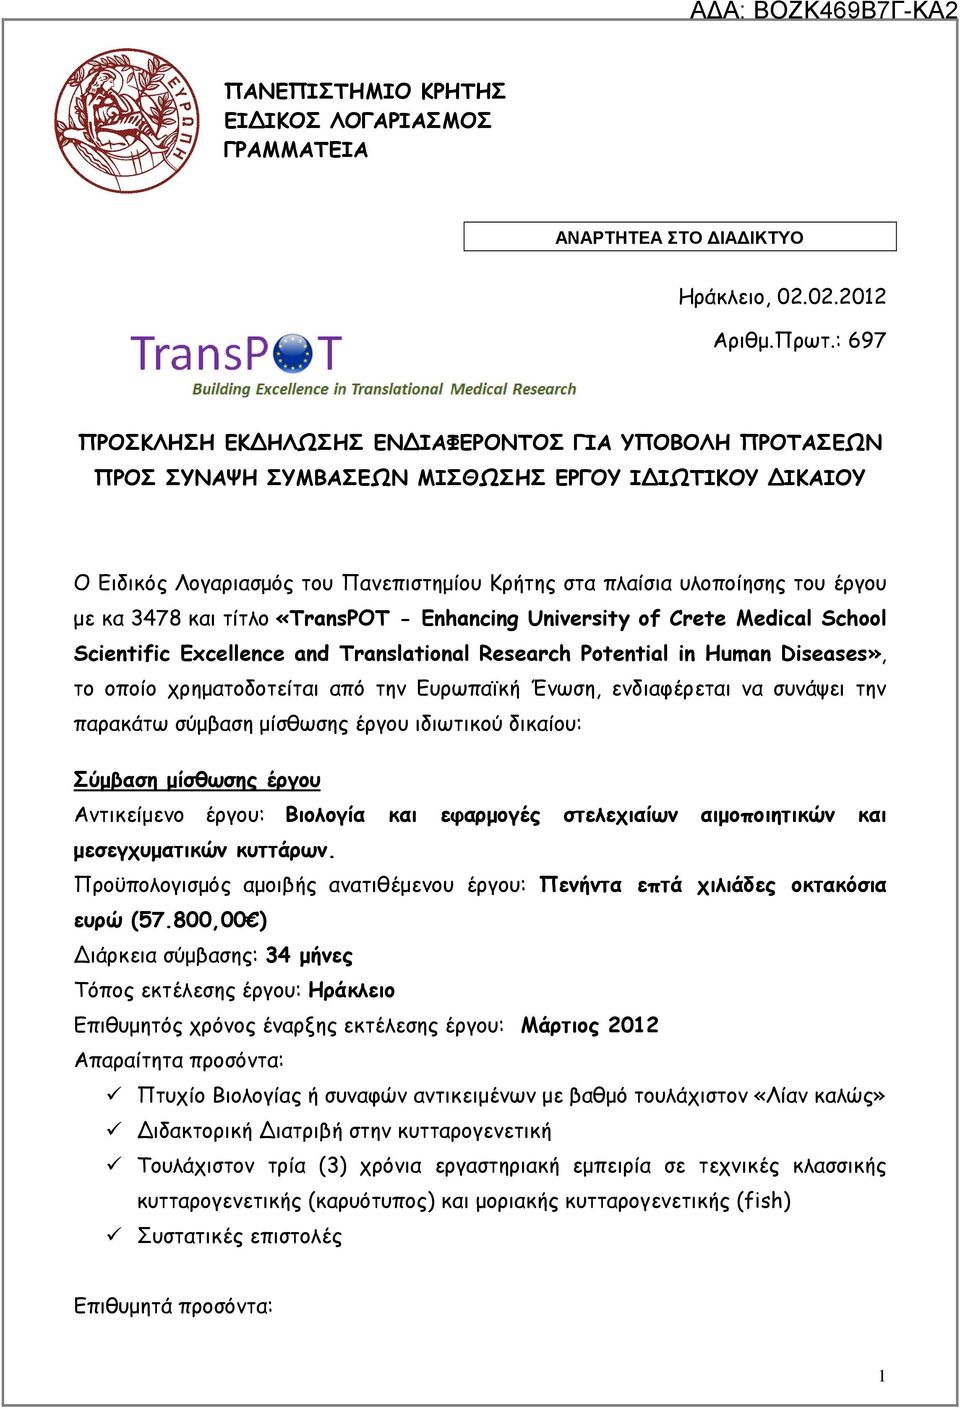 κα 3478 και τίτλο «TransPOT - Enhancing University of Crete Medical School Scientific Excellence and Translational Research Potential in Human Diseases», το οποίο χρηµατοδοτείται από την Ευρωπαϊκή